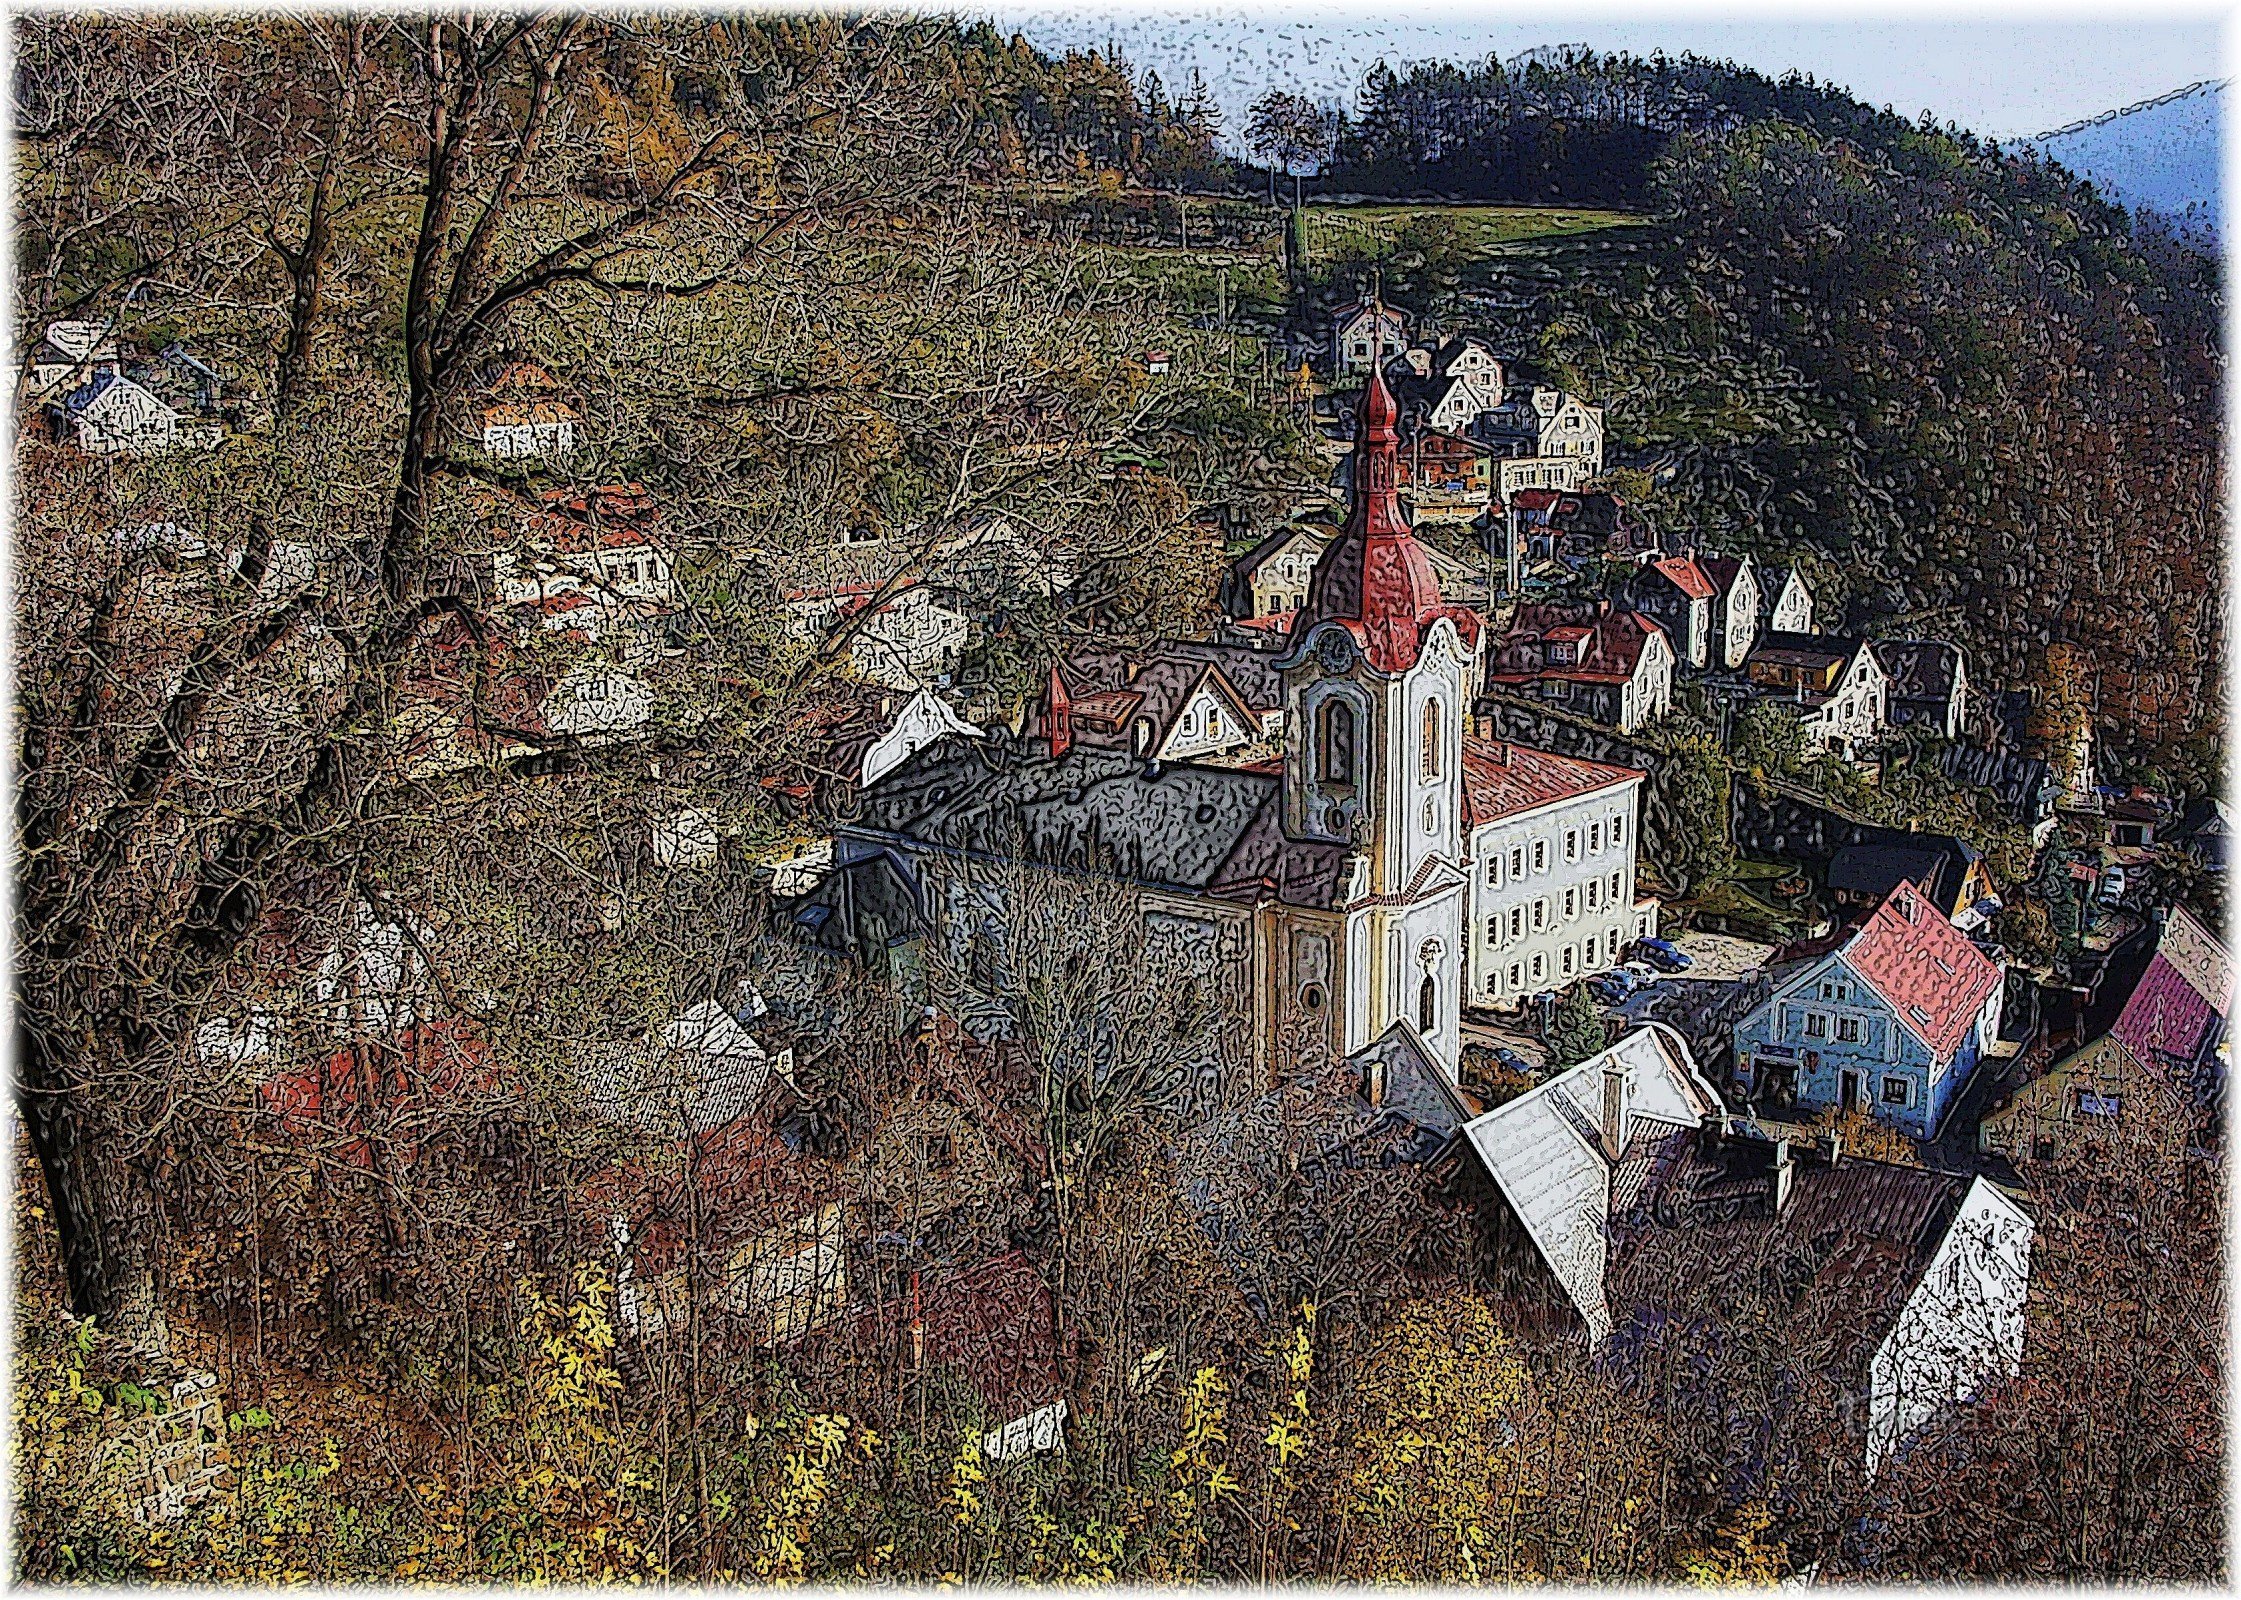 A la torre de vigilancia - Štramberská Trúba